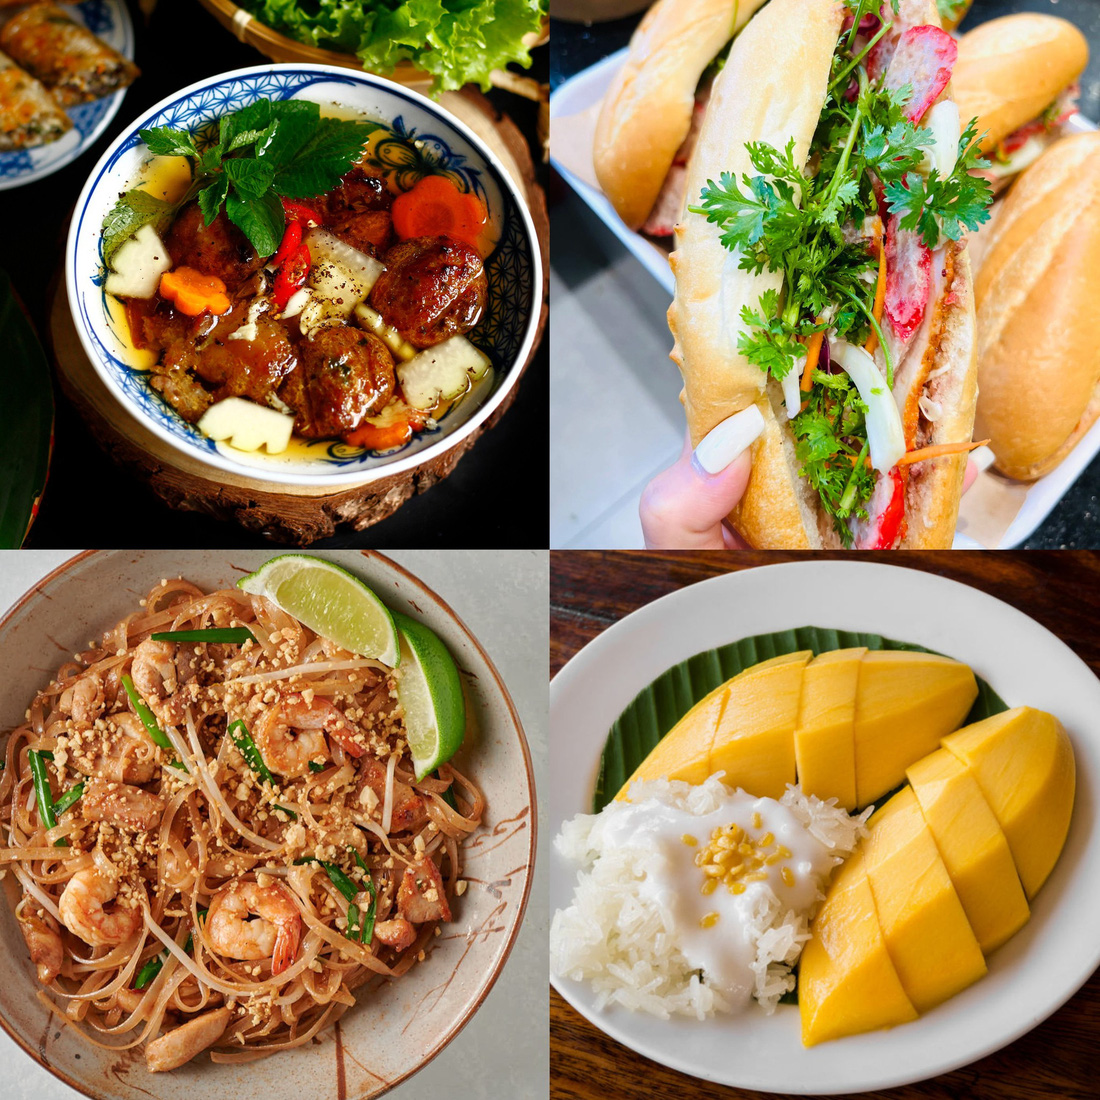 Ẩm thực Việt Nam hay Thái Lan ngon hơn? - Ảnh: Fanpage VKR News